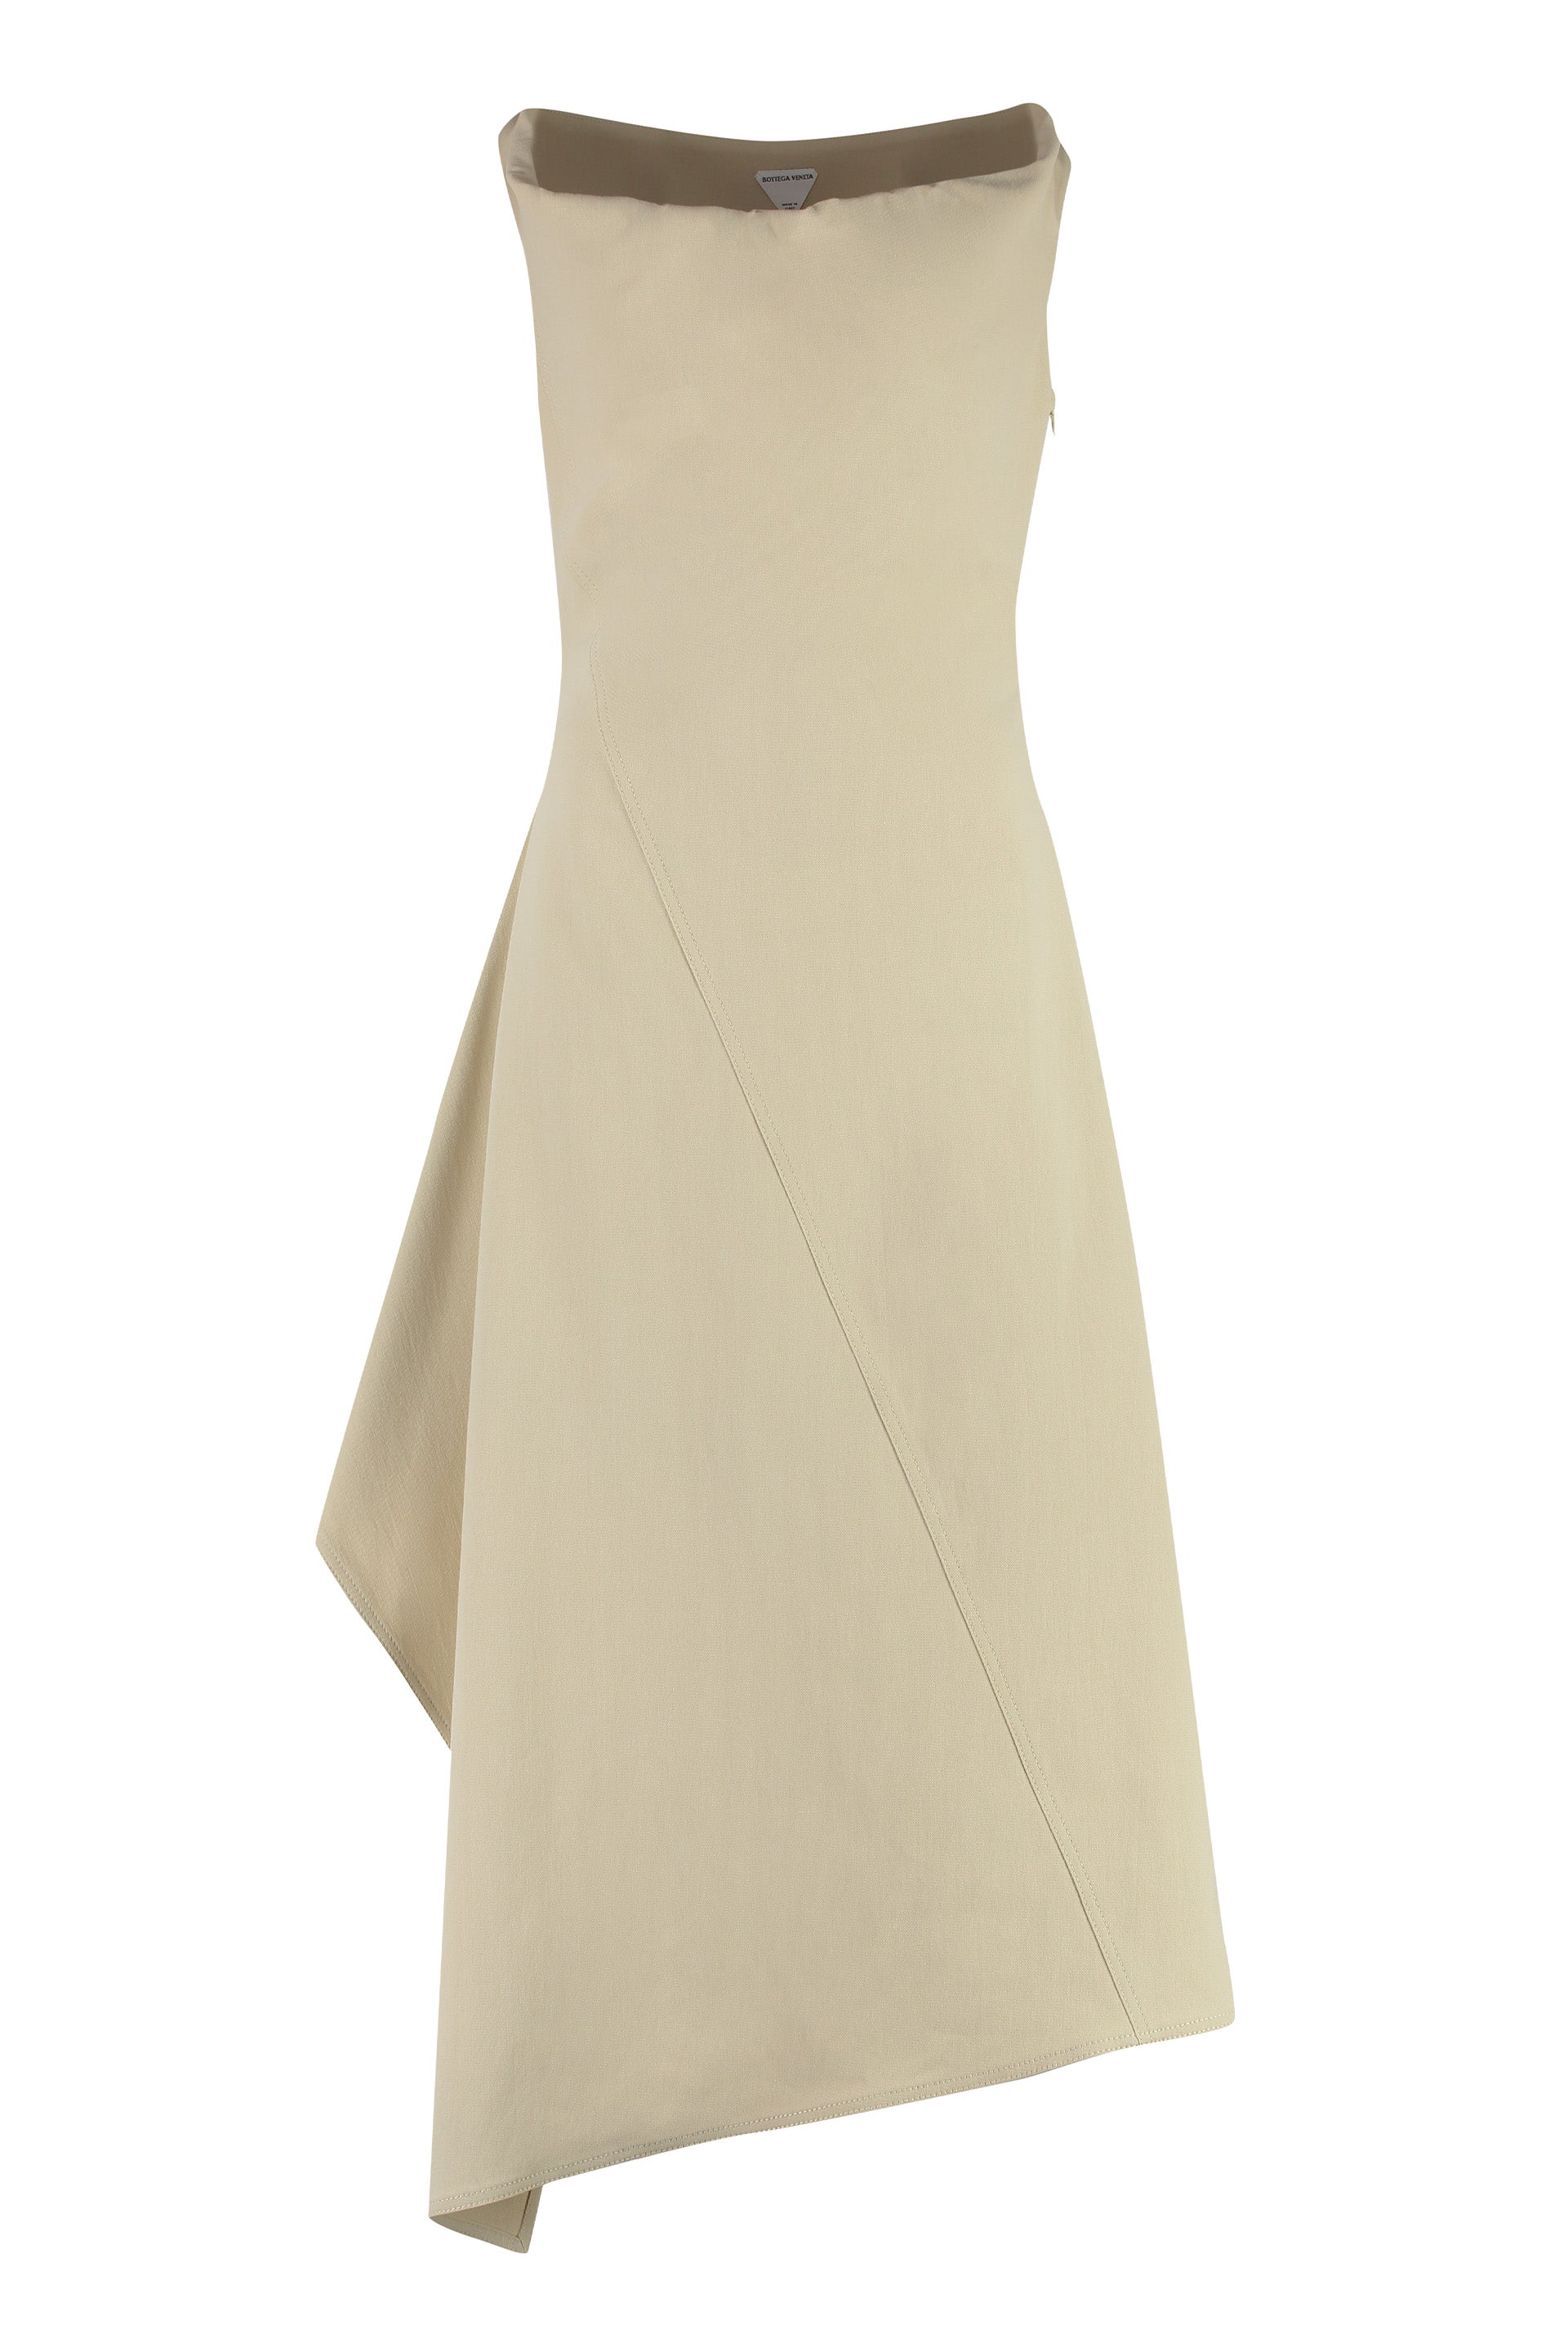 Shop Bottega Veneta Beige Asymmetrical Cotton Dress For Women